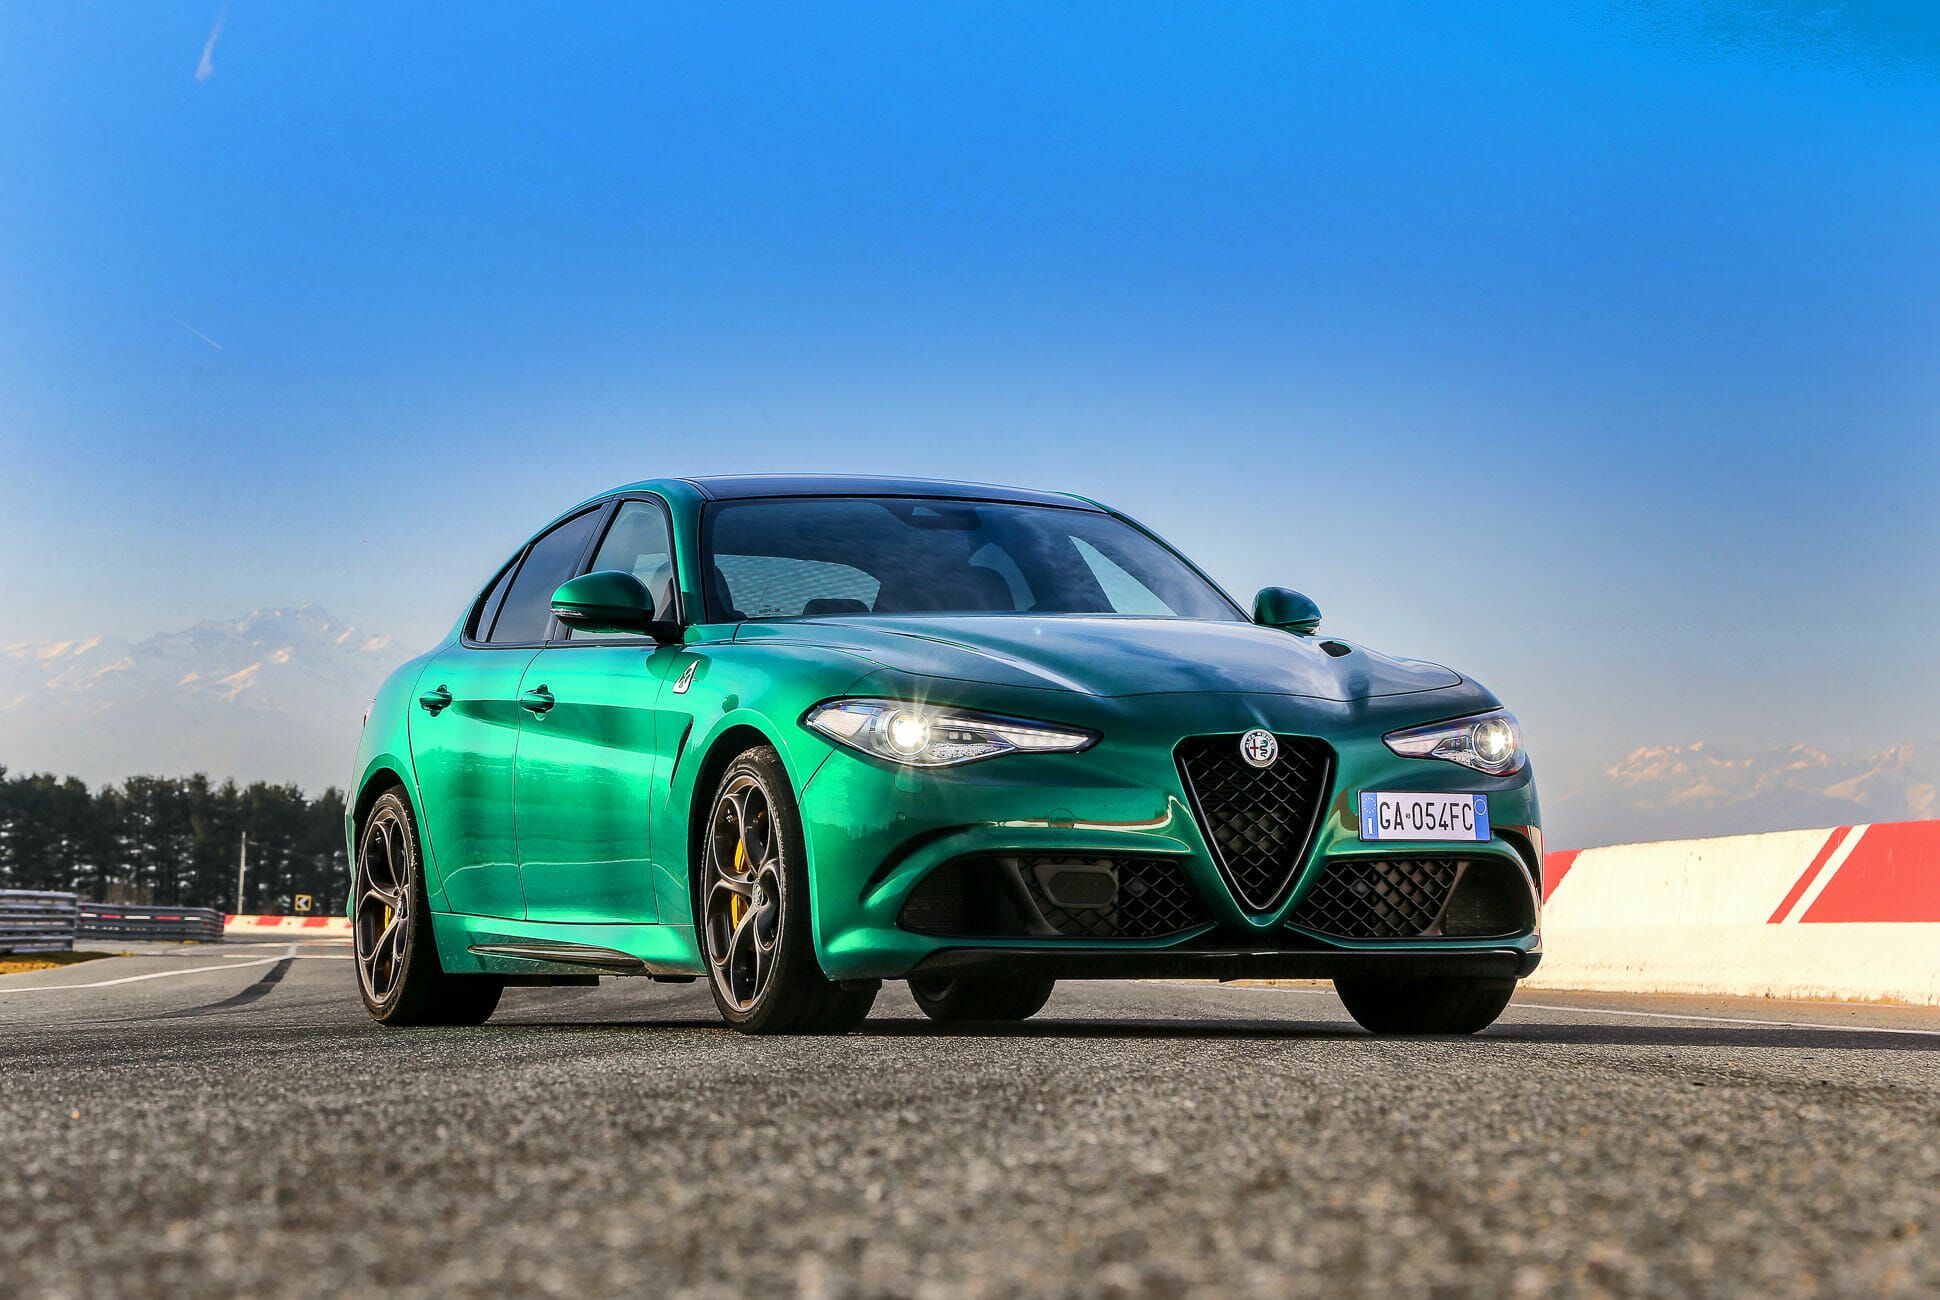 Review: The 2020 Alfa Romeo Giulia Quadrifoglio &bull; Gear Patrol